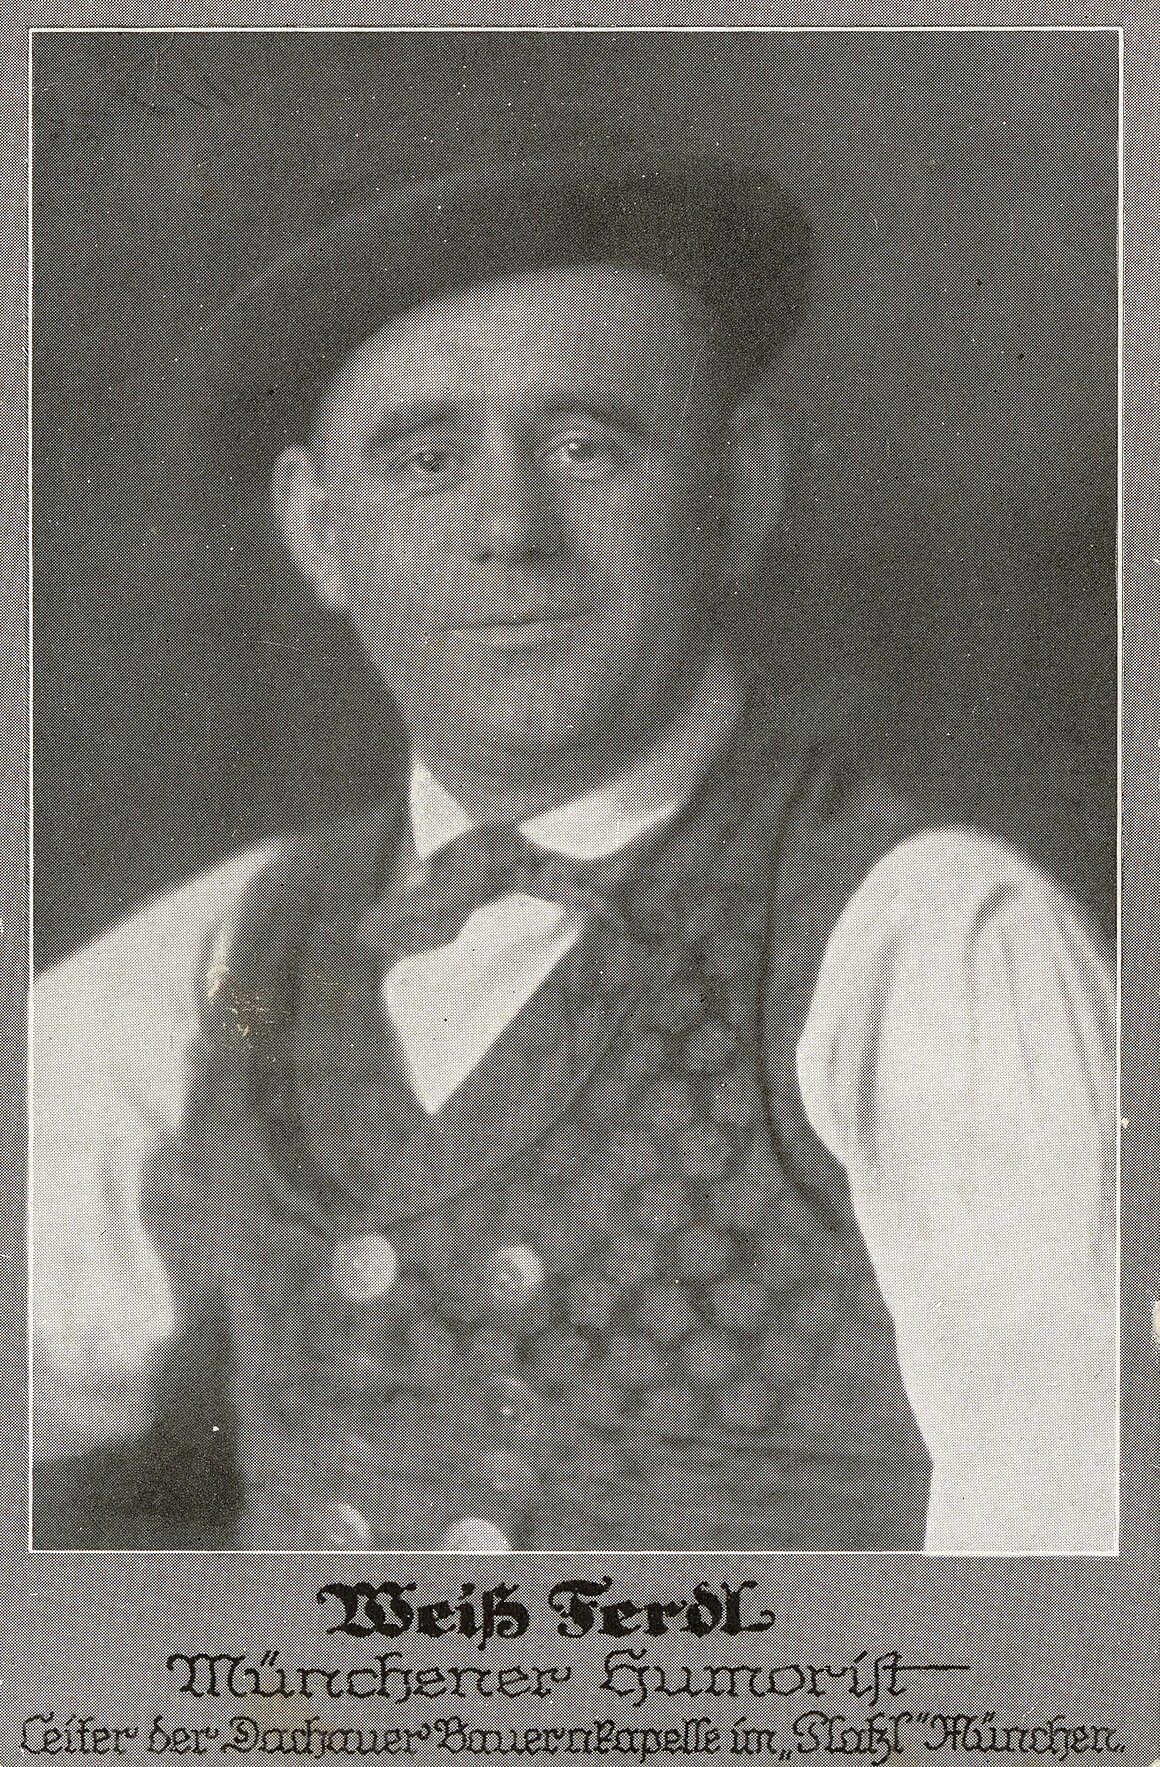 Weiß Ferdl, Münchner Humorist, um 1925